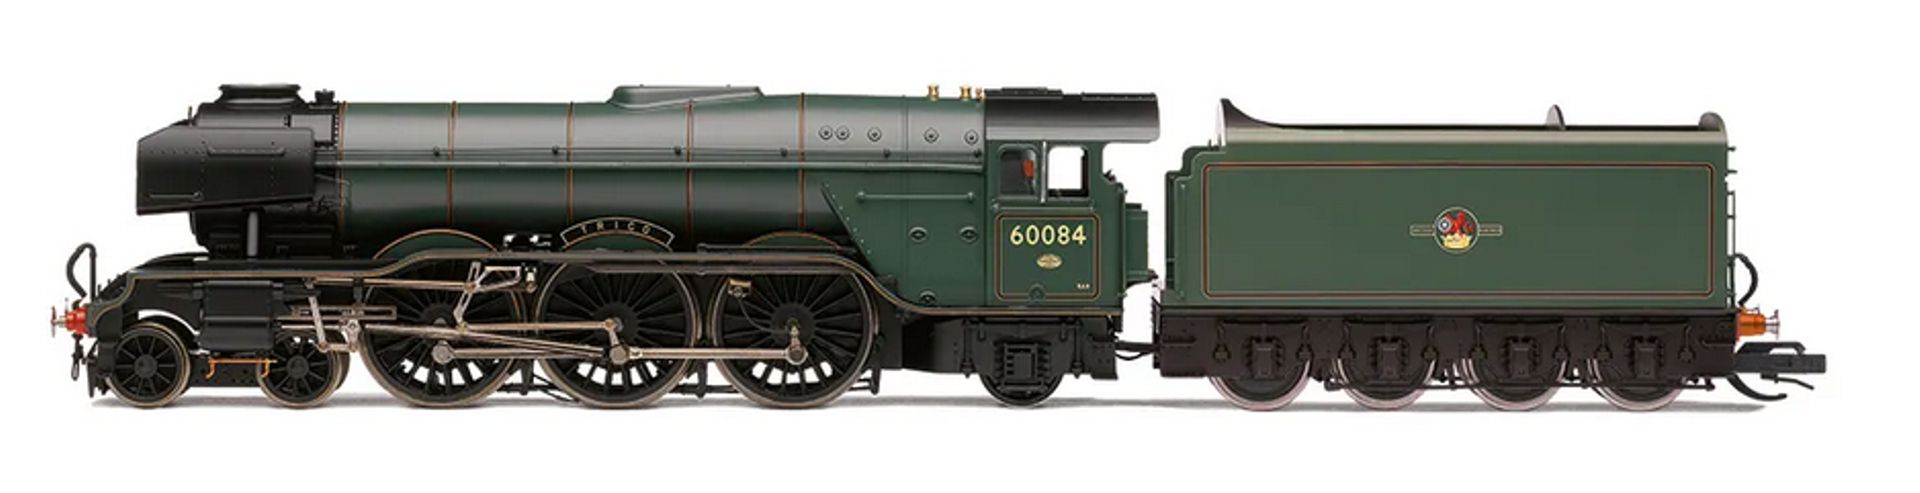 Hornby TT3006M - Dampflok Class A3 4-6-2 60084 'Trigo', Ep.III